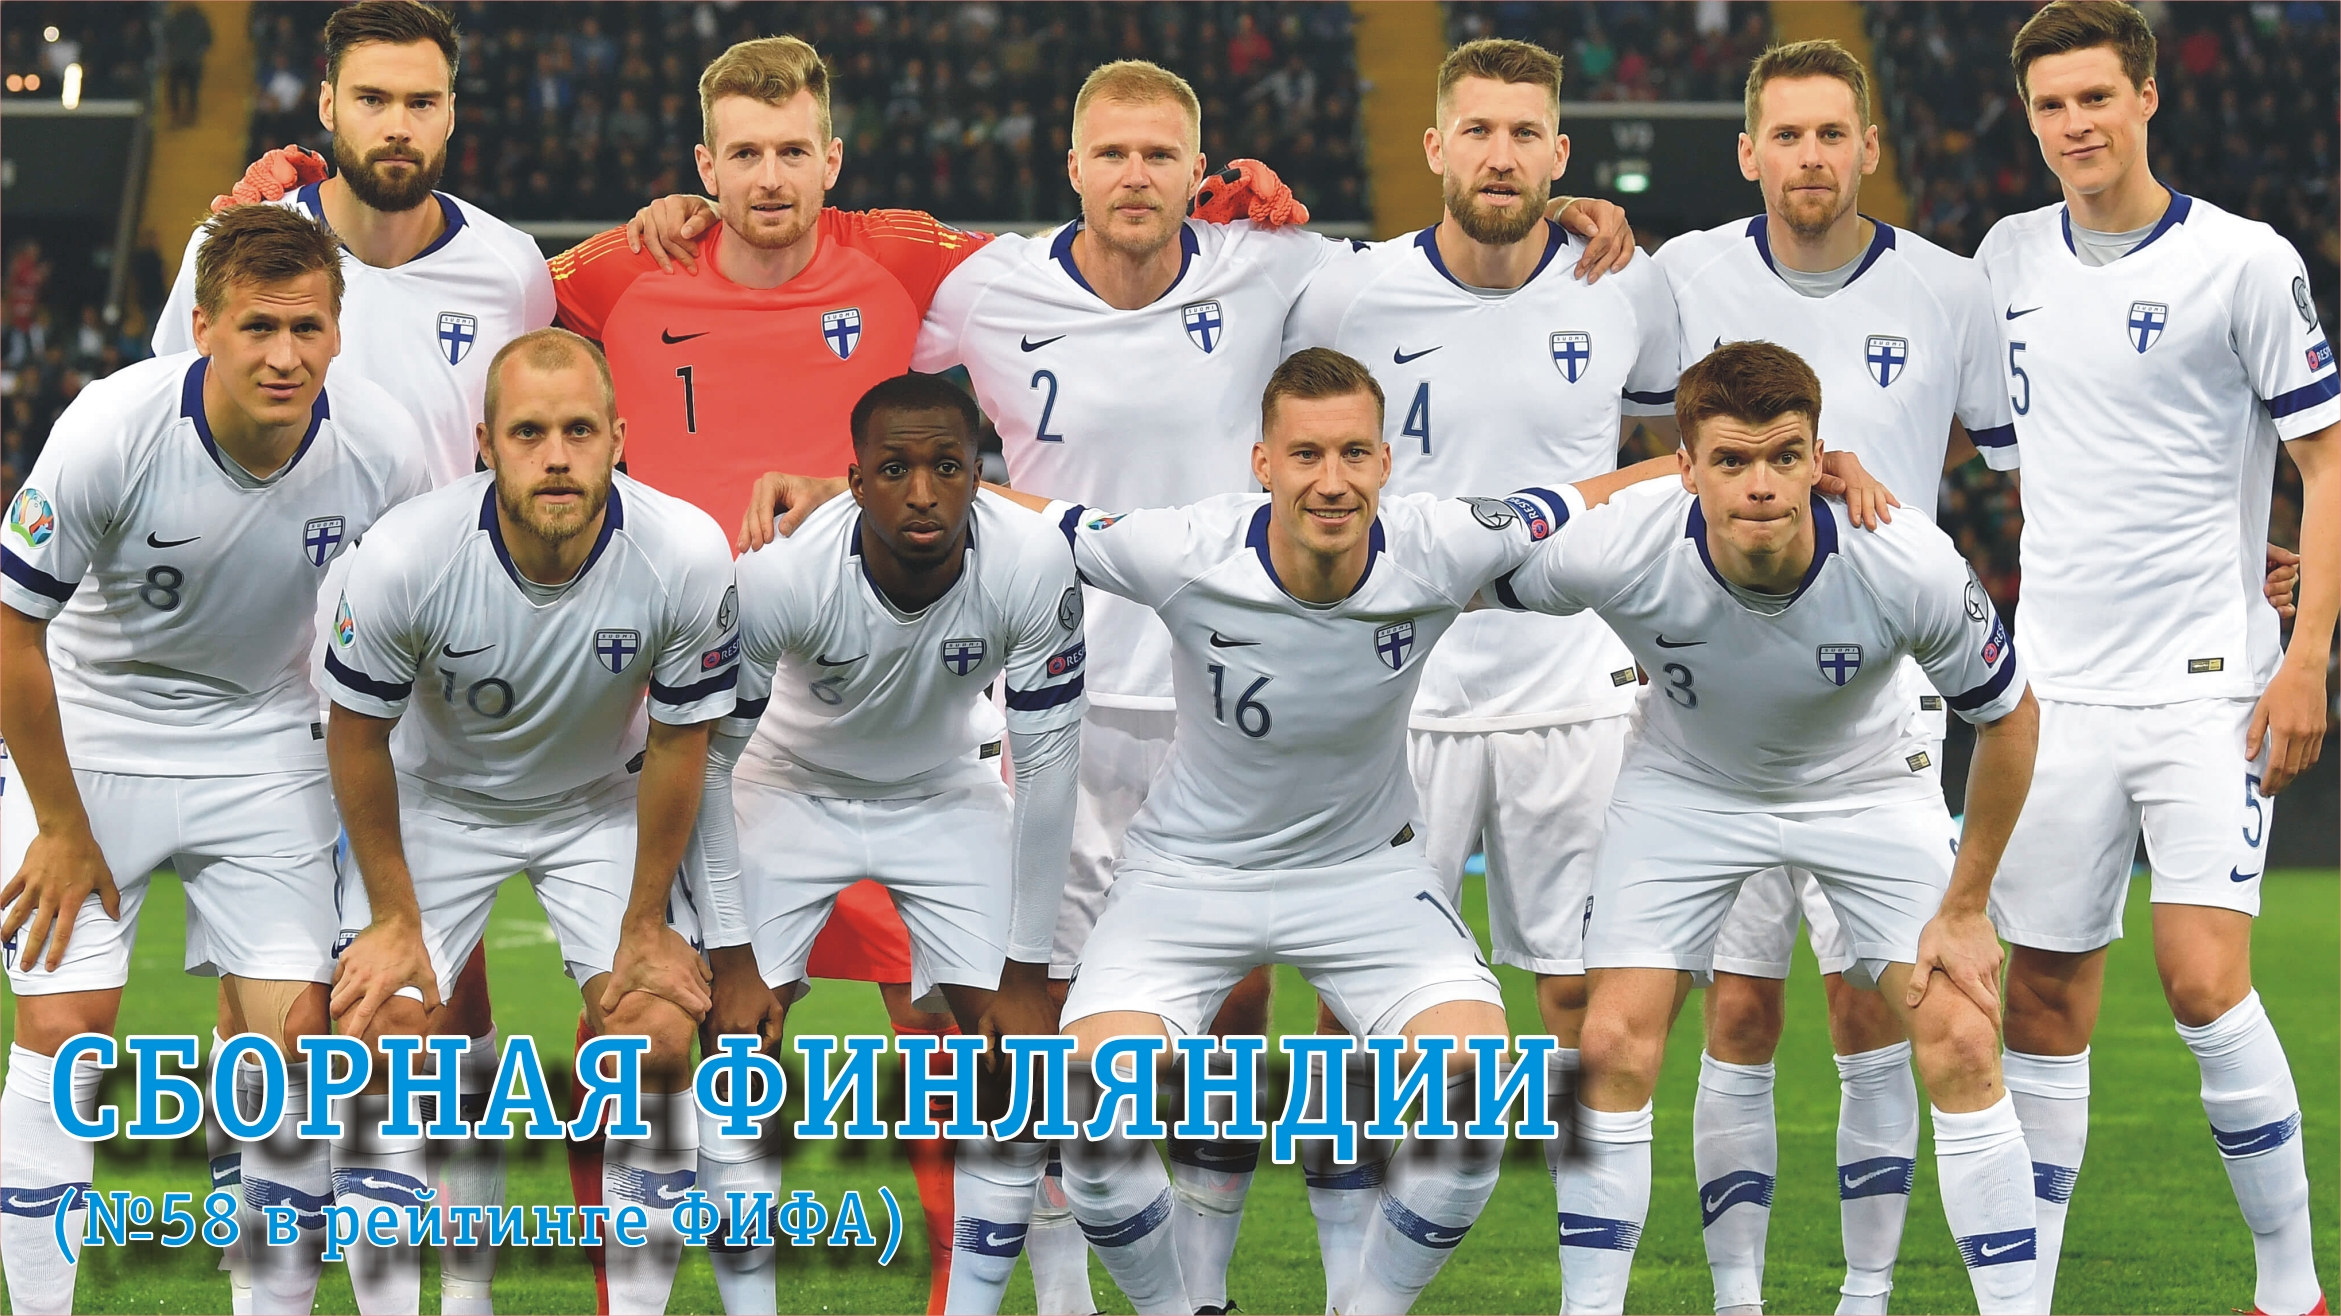 Соперники сборной России на ЕВРО-2020: Финляндия